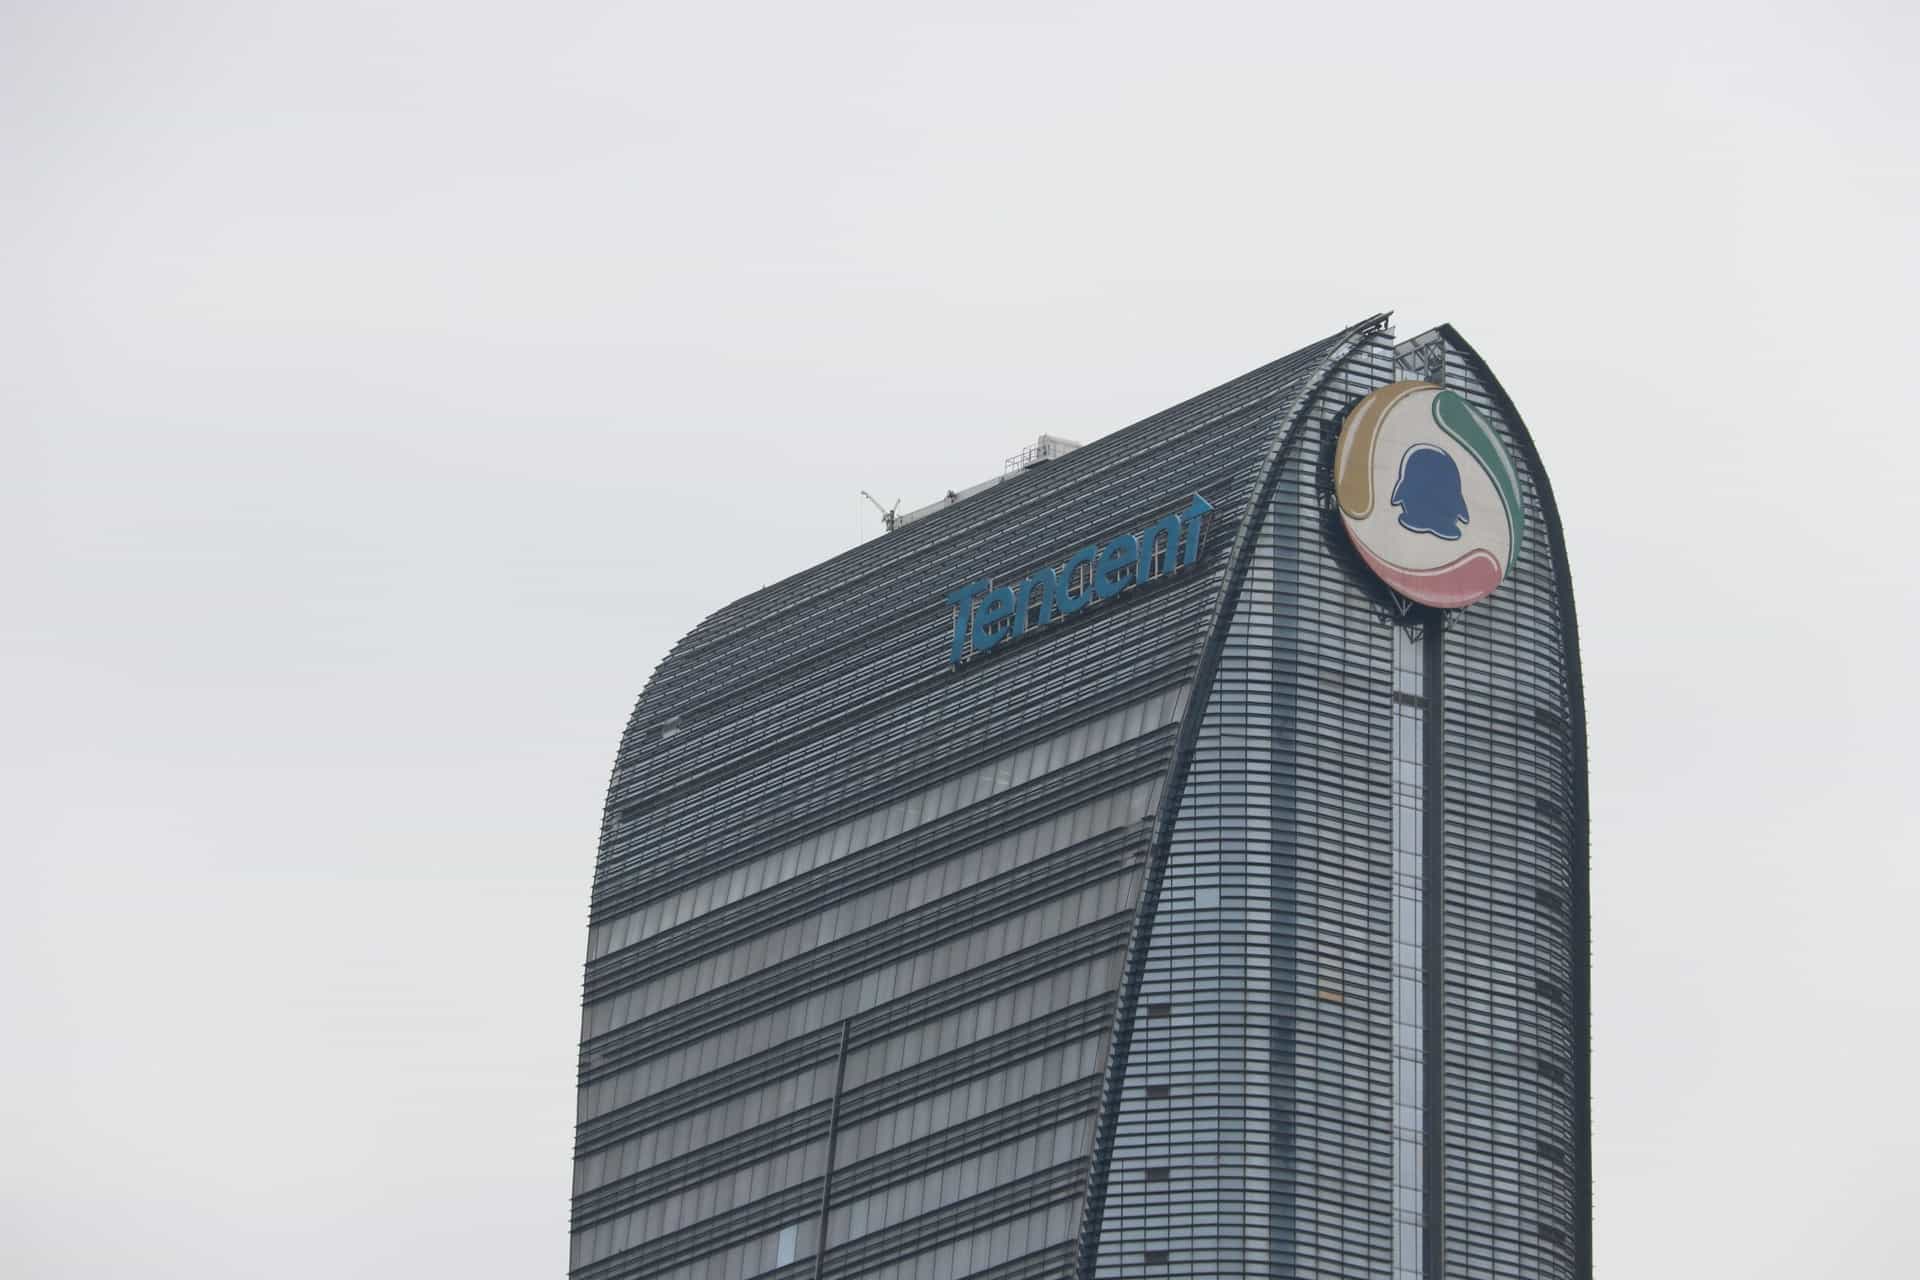 Immeuble de bureaux avec signe Tencent